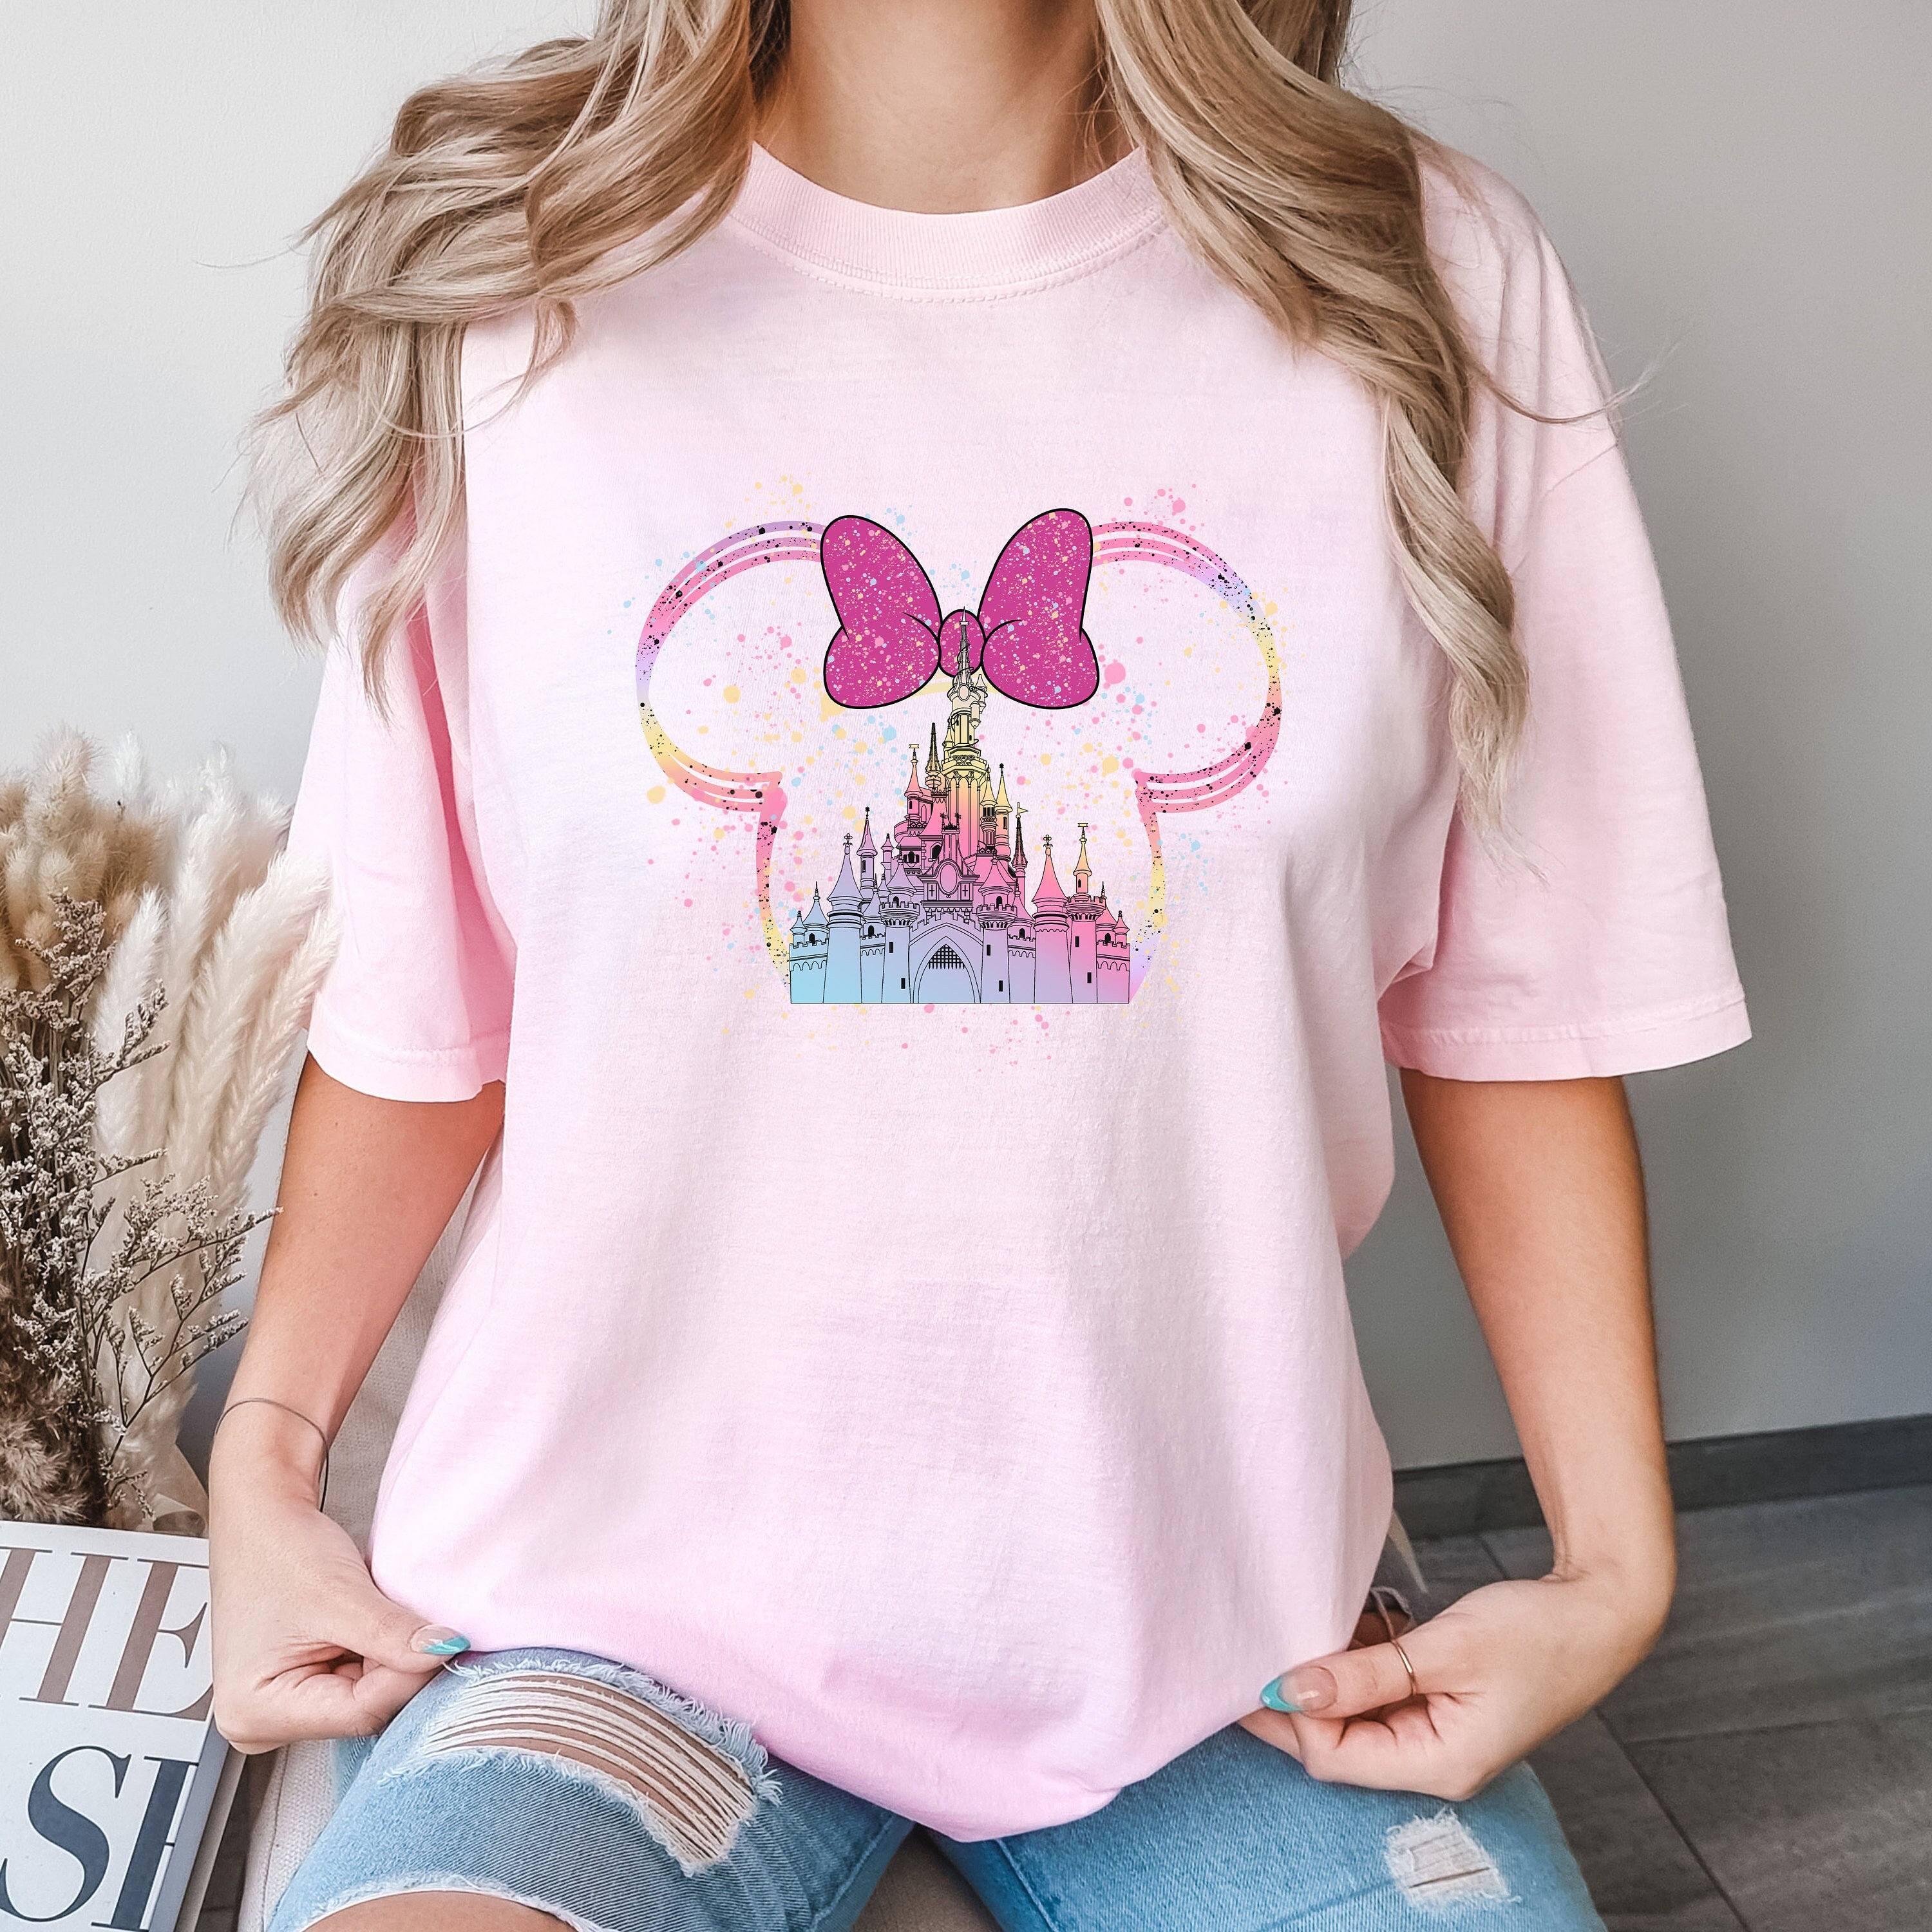 minnie colorful castle t shirt minnie mouse t shirt disney castle shirt gift for kids gift for birthday 9641 22bvq